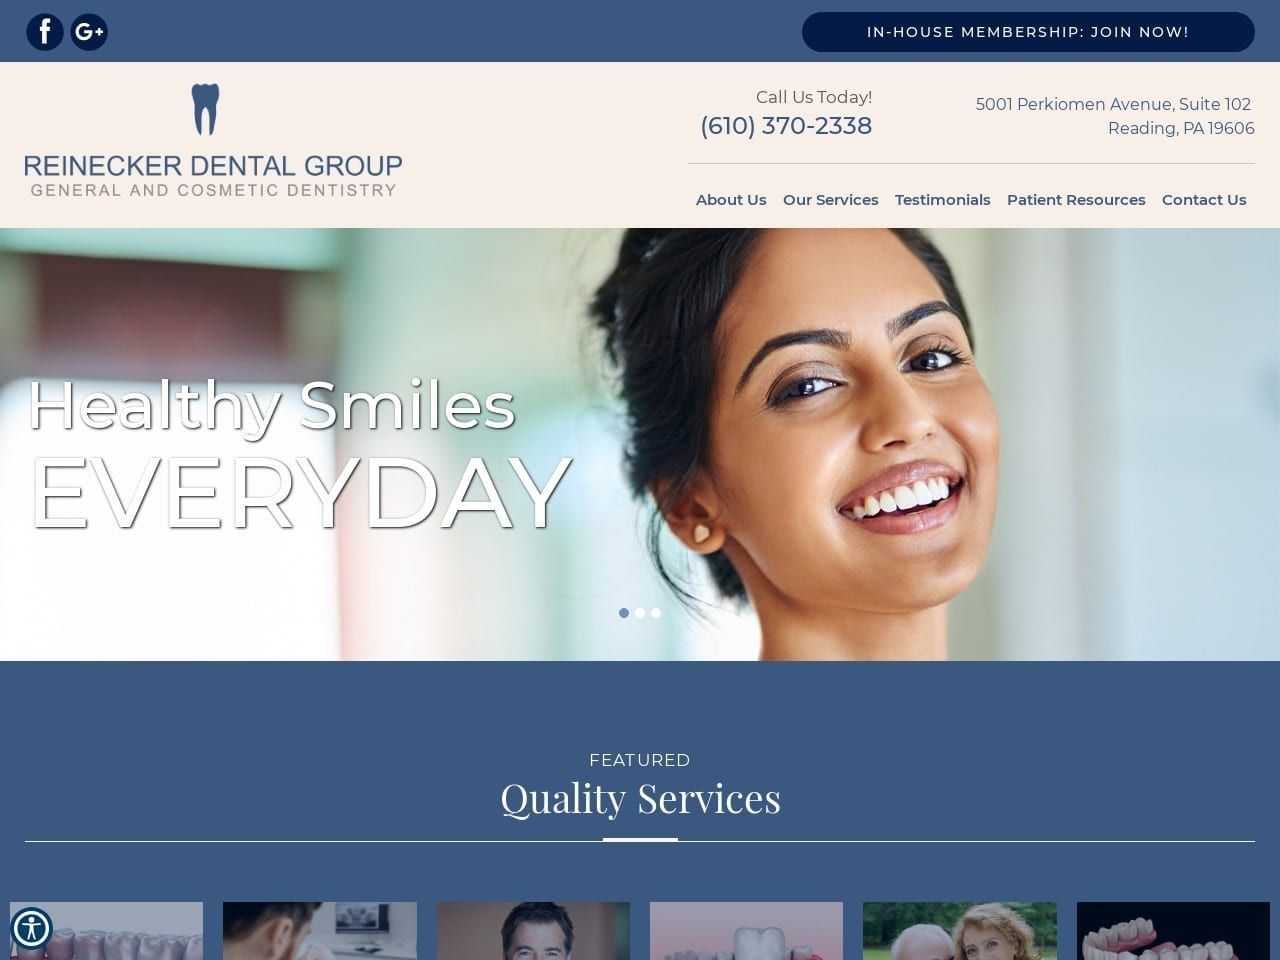 Reinecker Dental Group Website Screenshot from reineckerdentalgroup.com